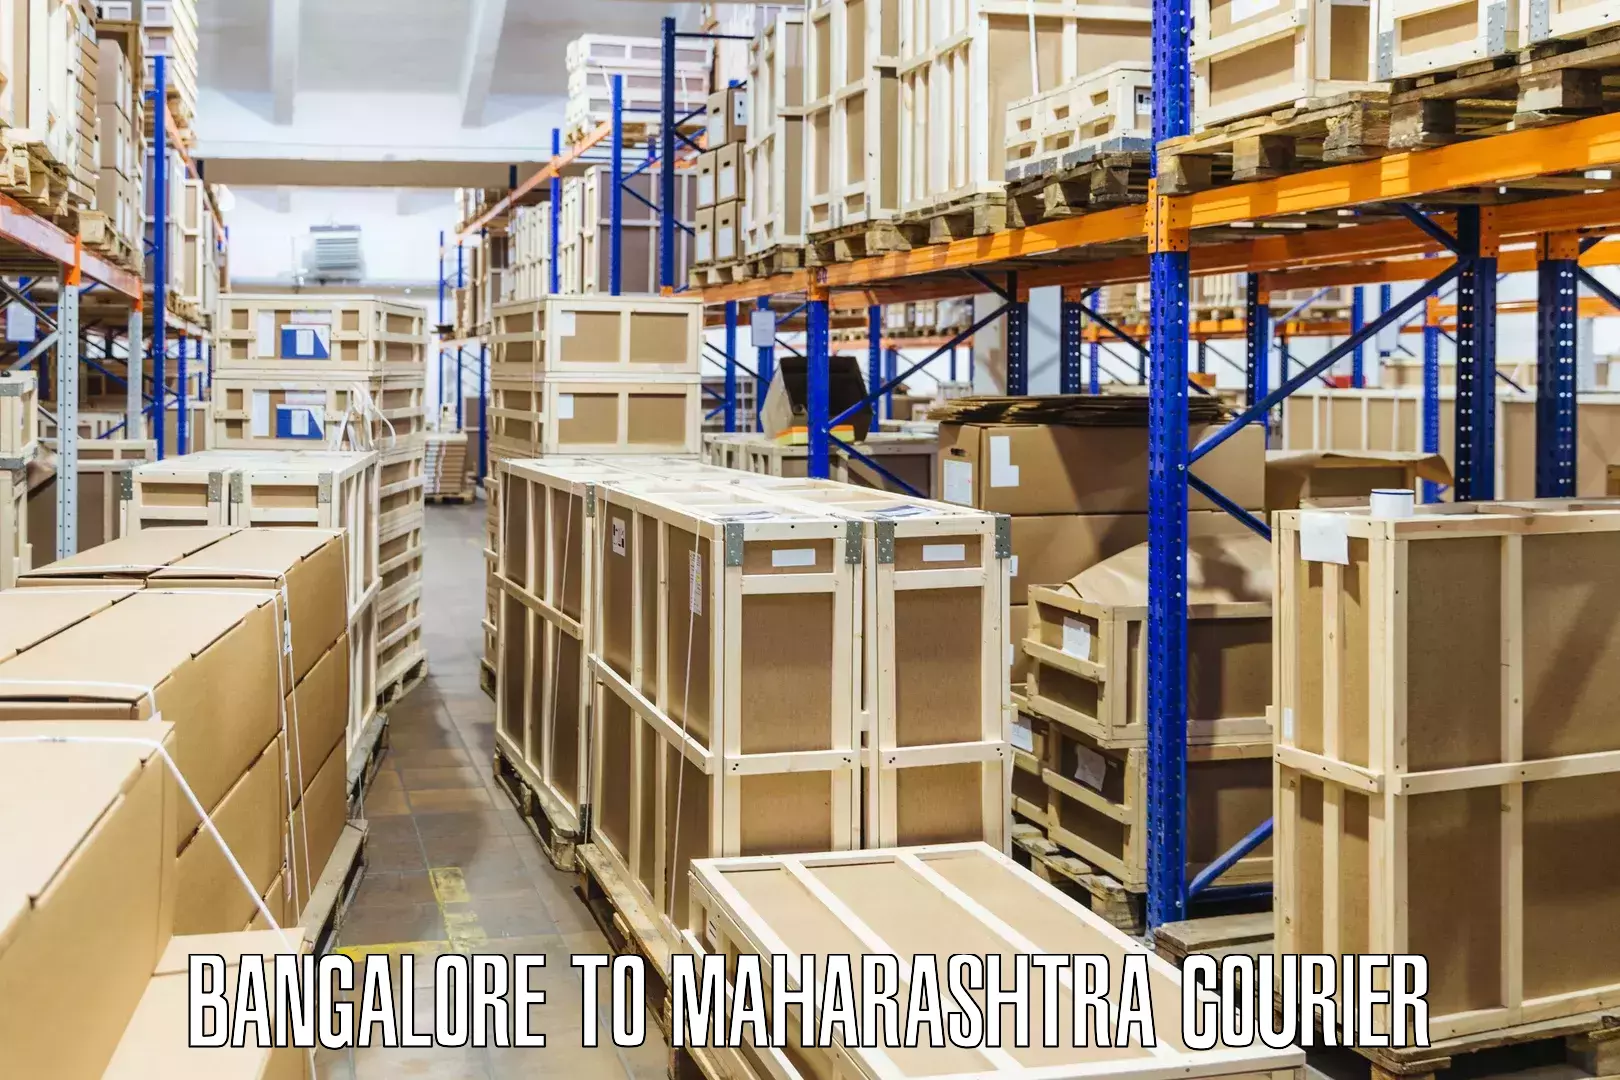 Package forwarding in Bangalore to Maharashtra